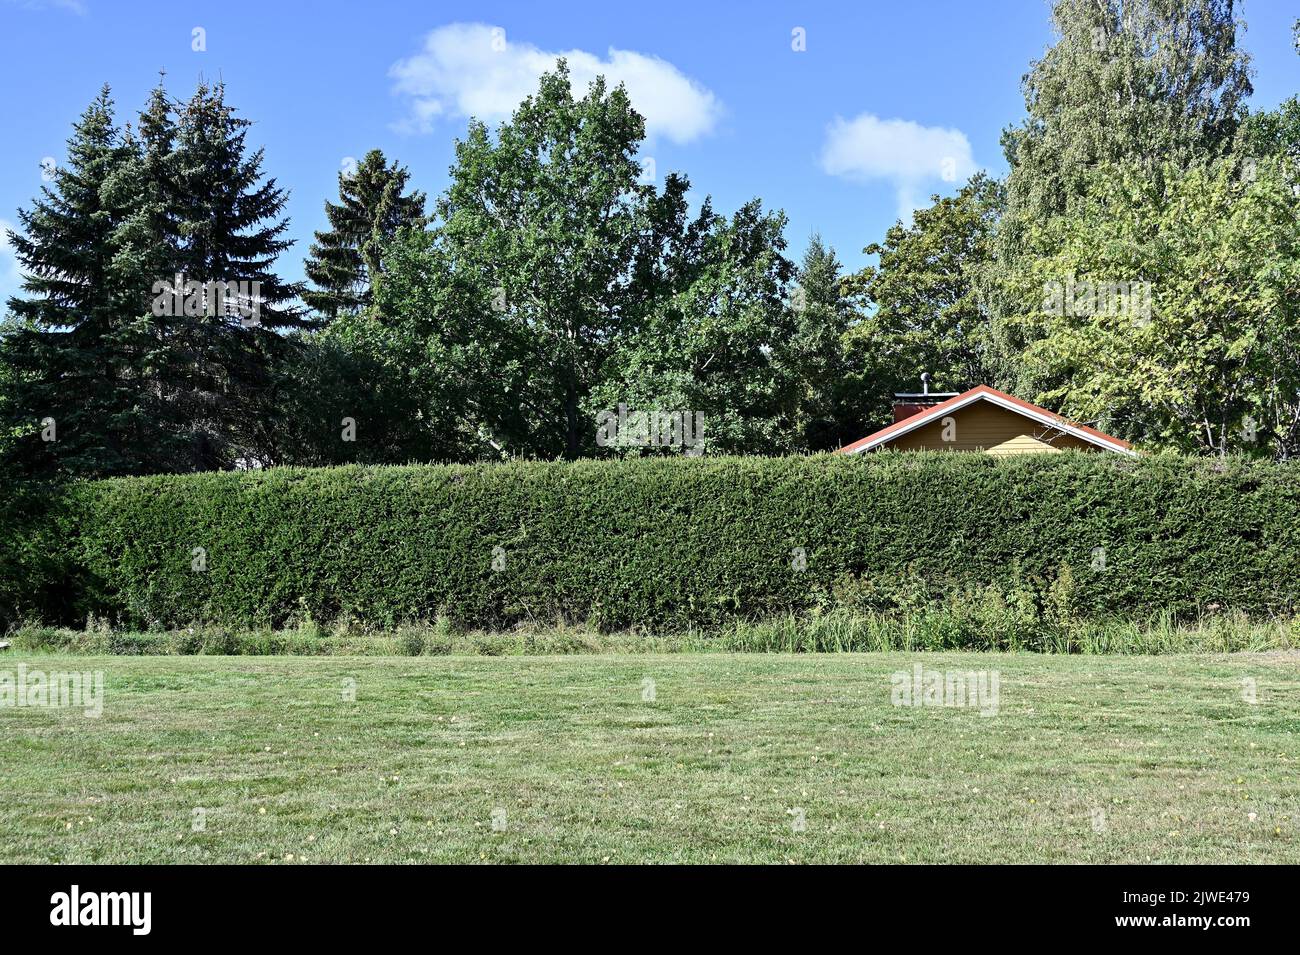 Das Dach des Hauses ist sichtbar hinter der grünen Hecke, deadpan Fotografie Stockfoto